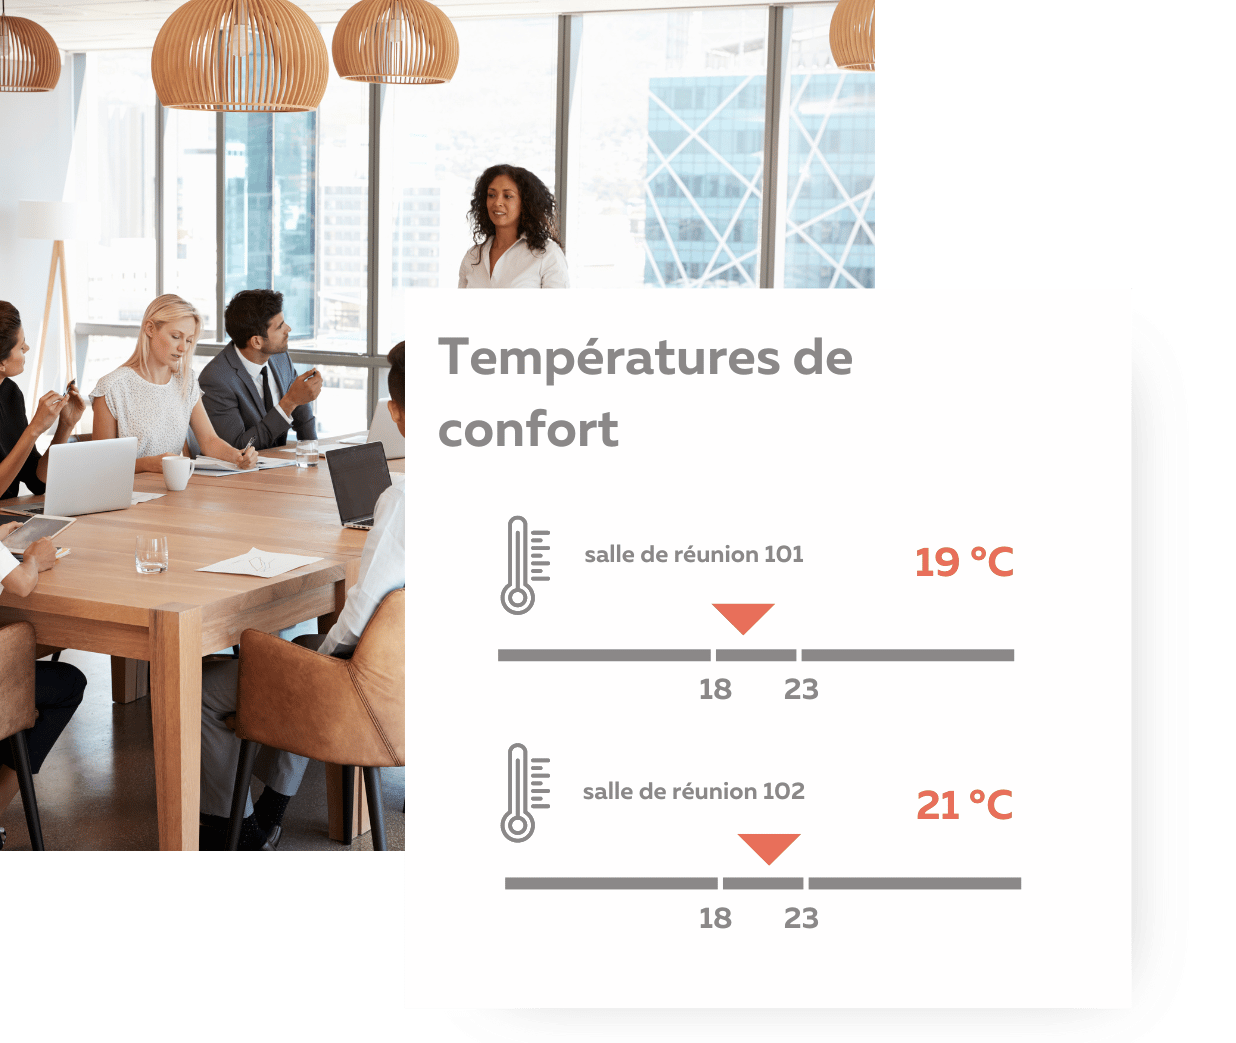 temperatures_iot_advizeo